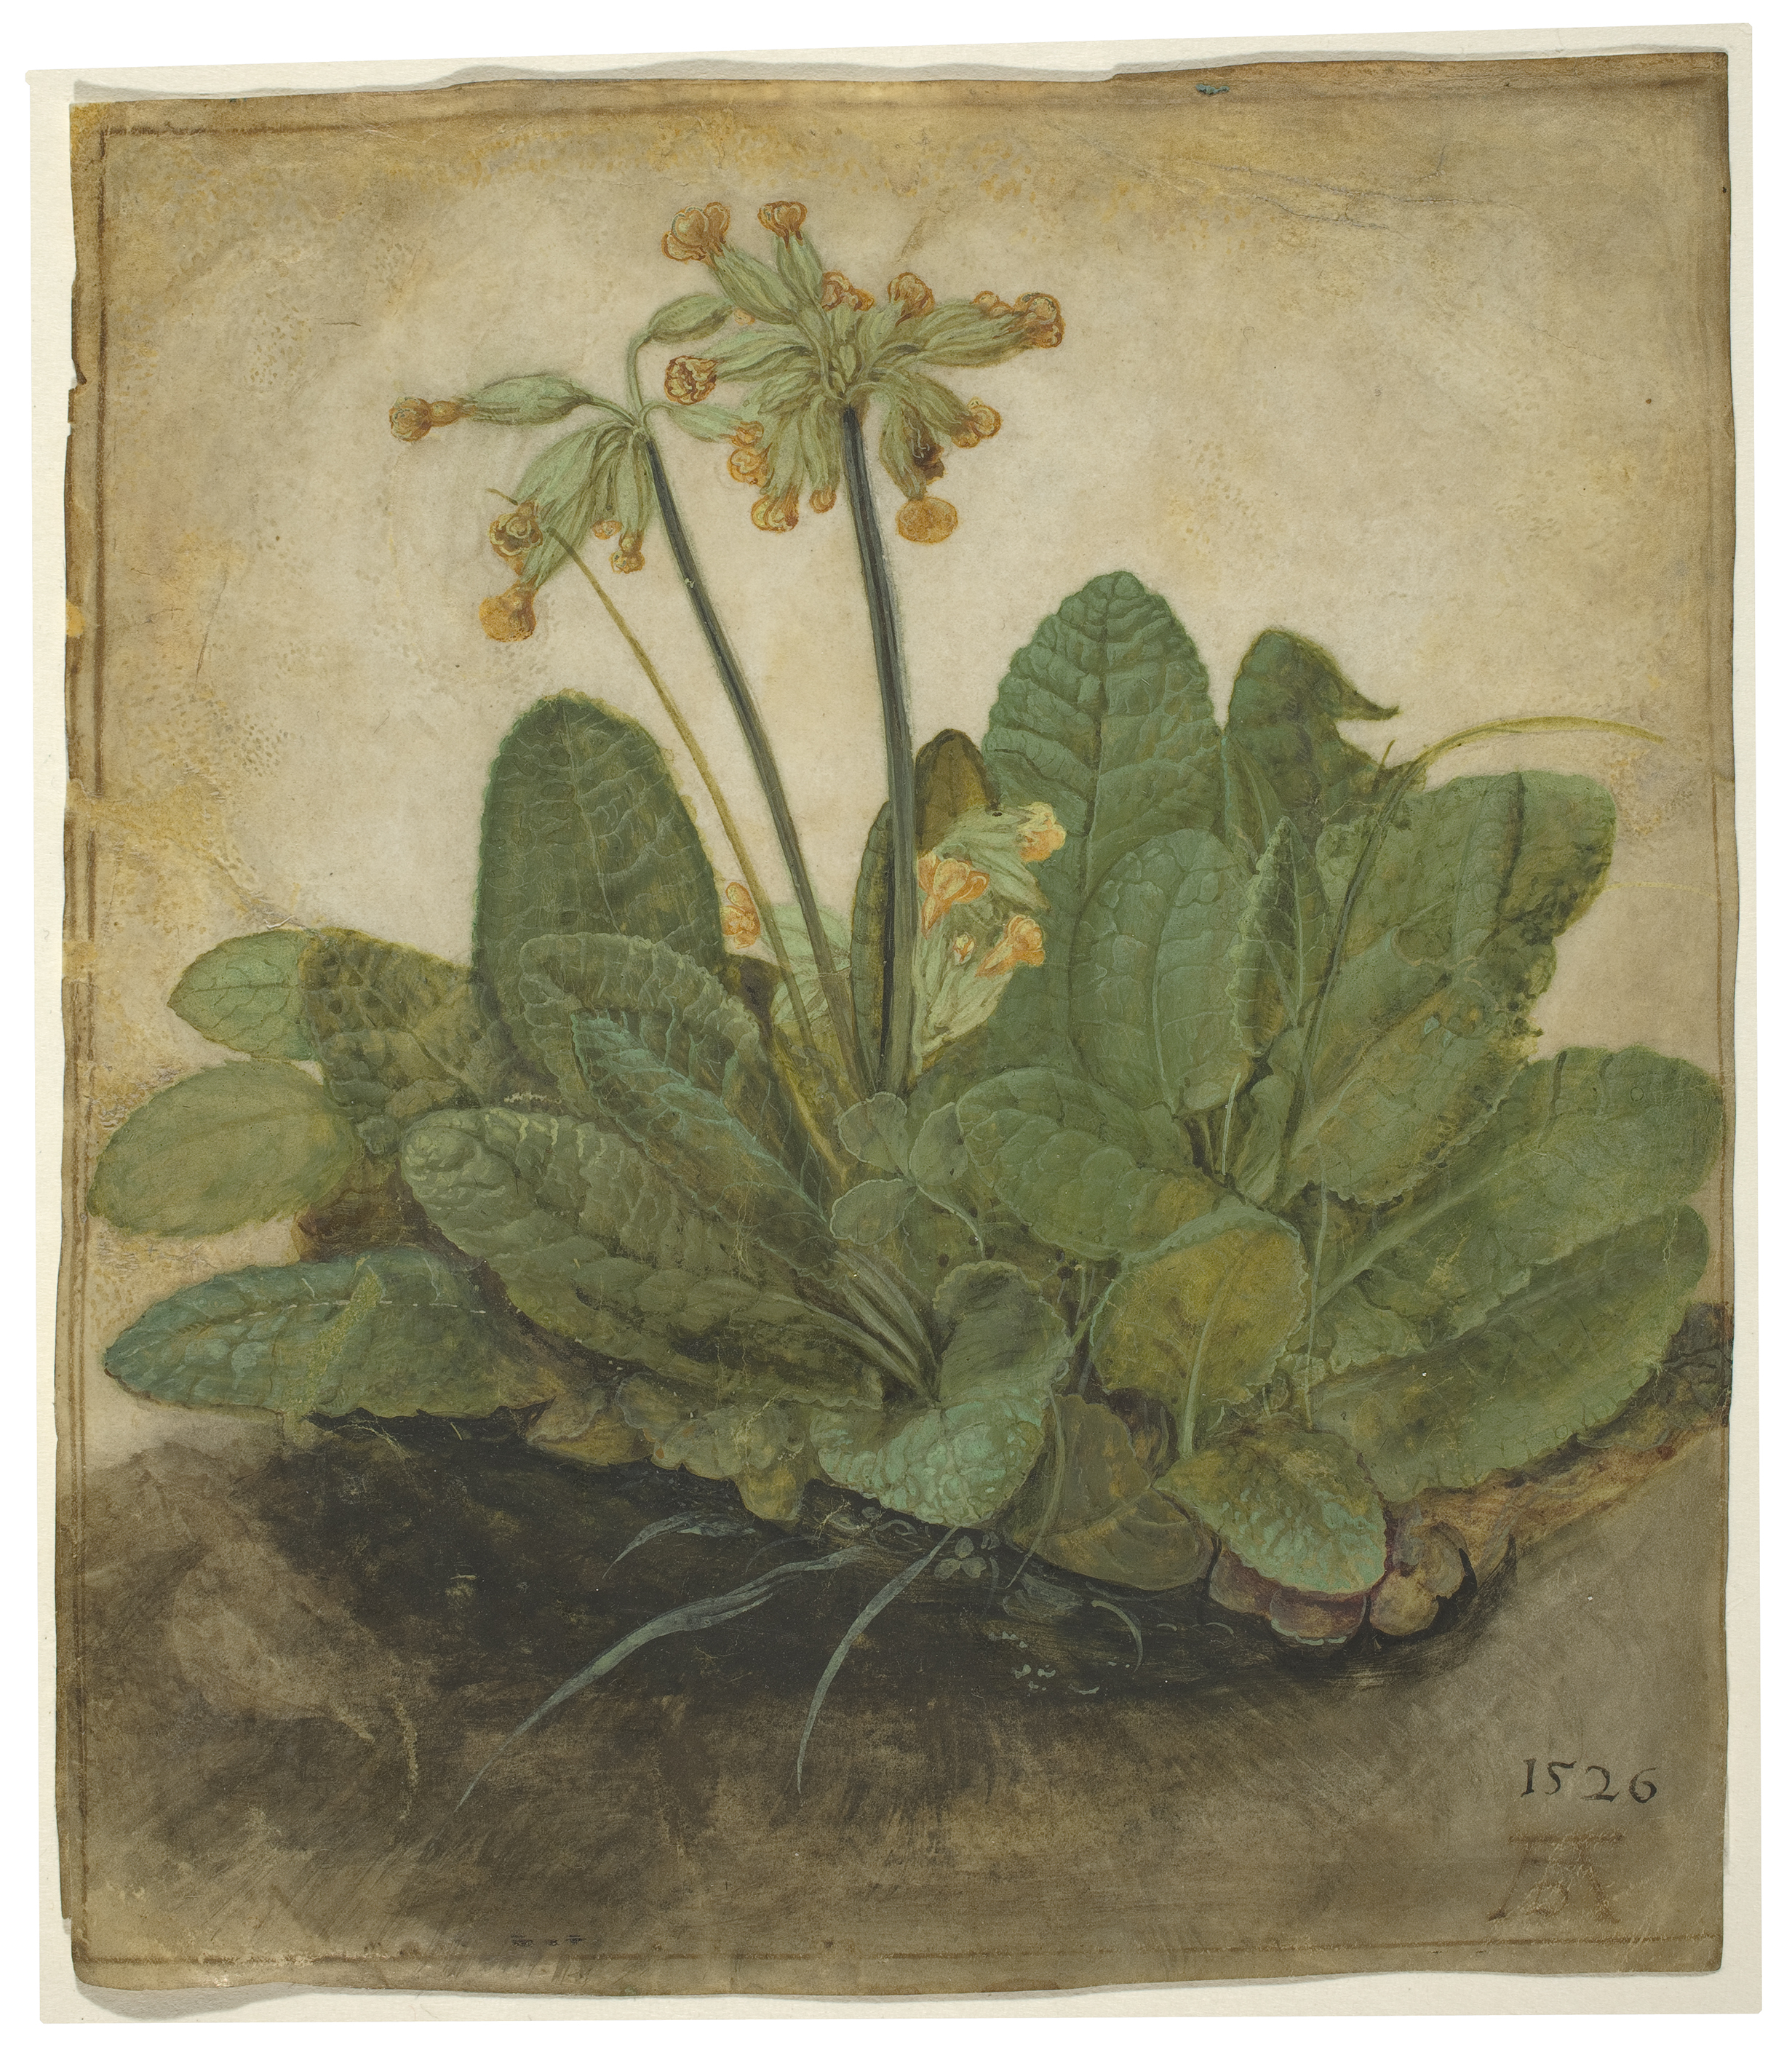 Püsküllü Çuha Çiçeği by Albrecht Dürer - 1526 - 19.3 x 16.8 cm 